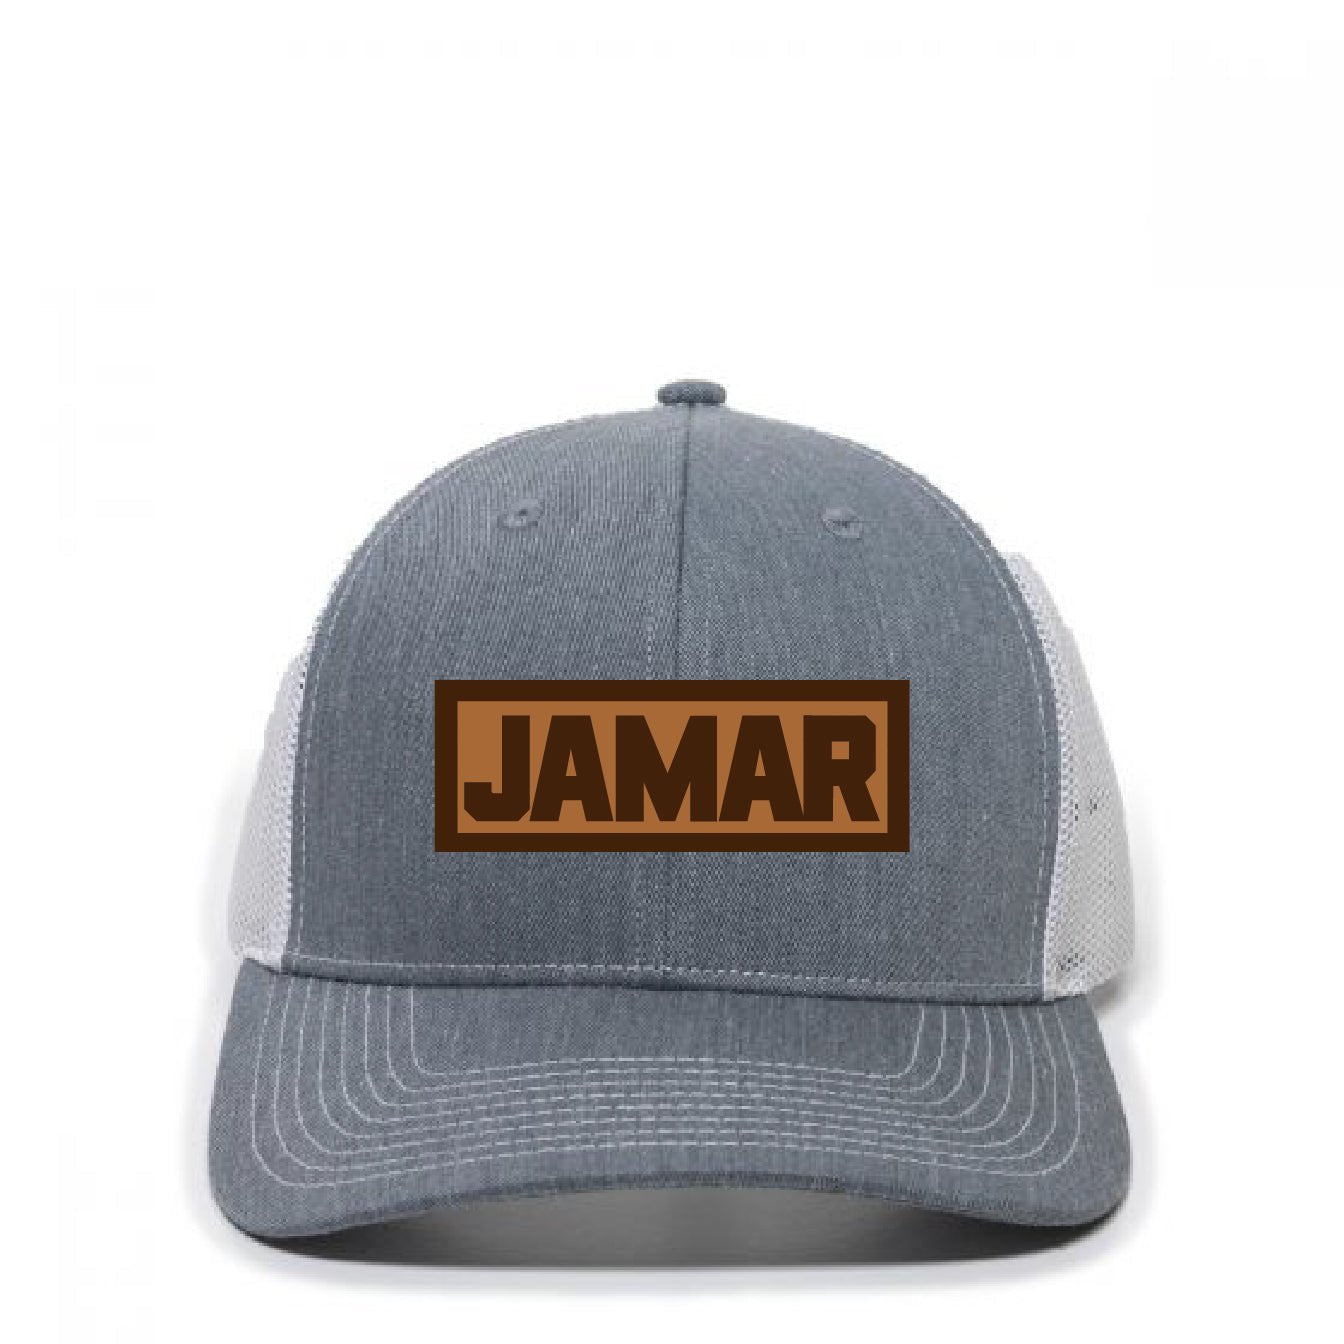 Jamar Service Trucker Hat - DSP On Demand